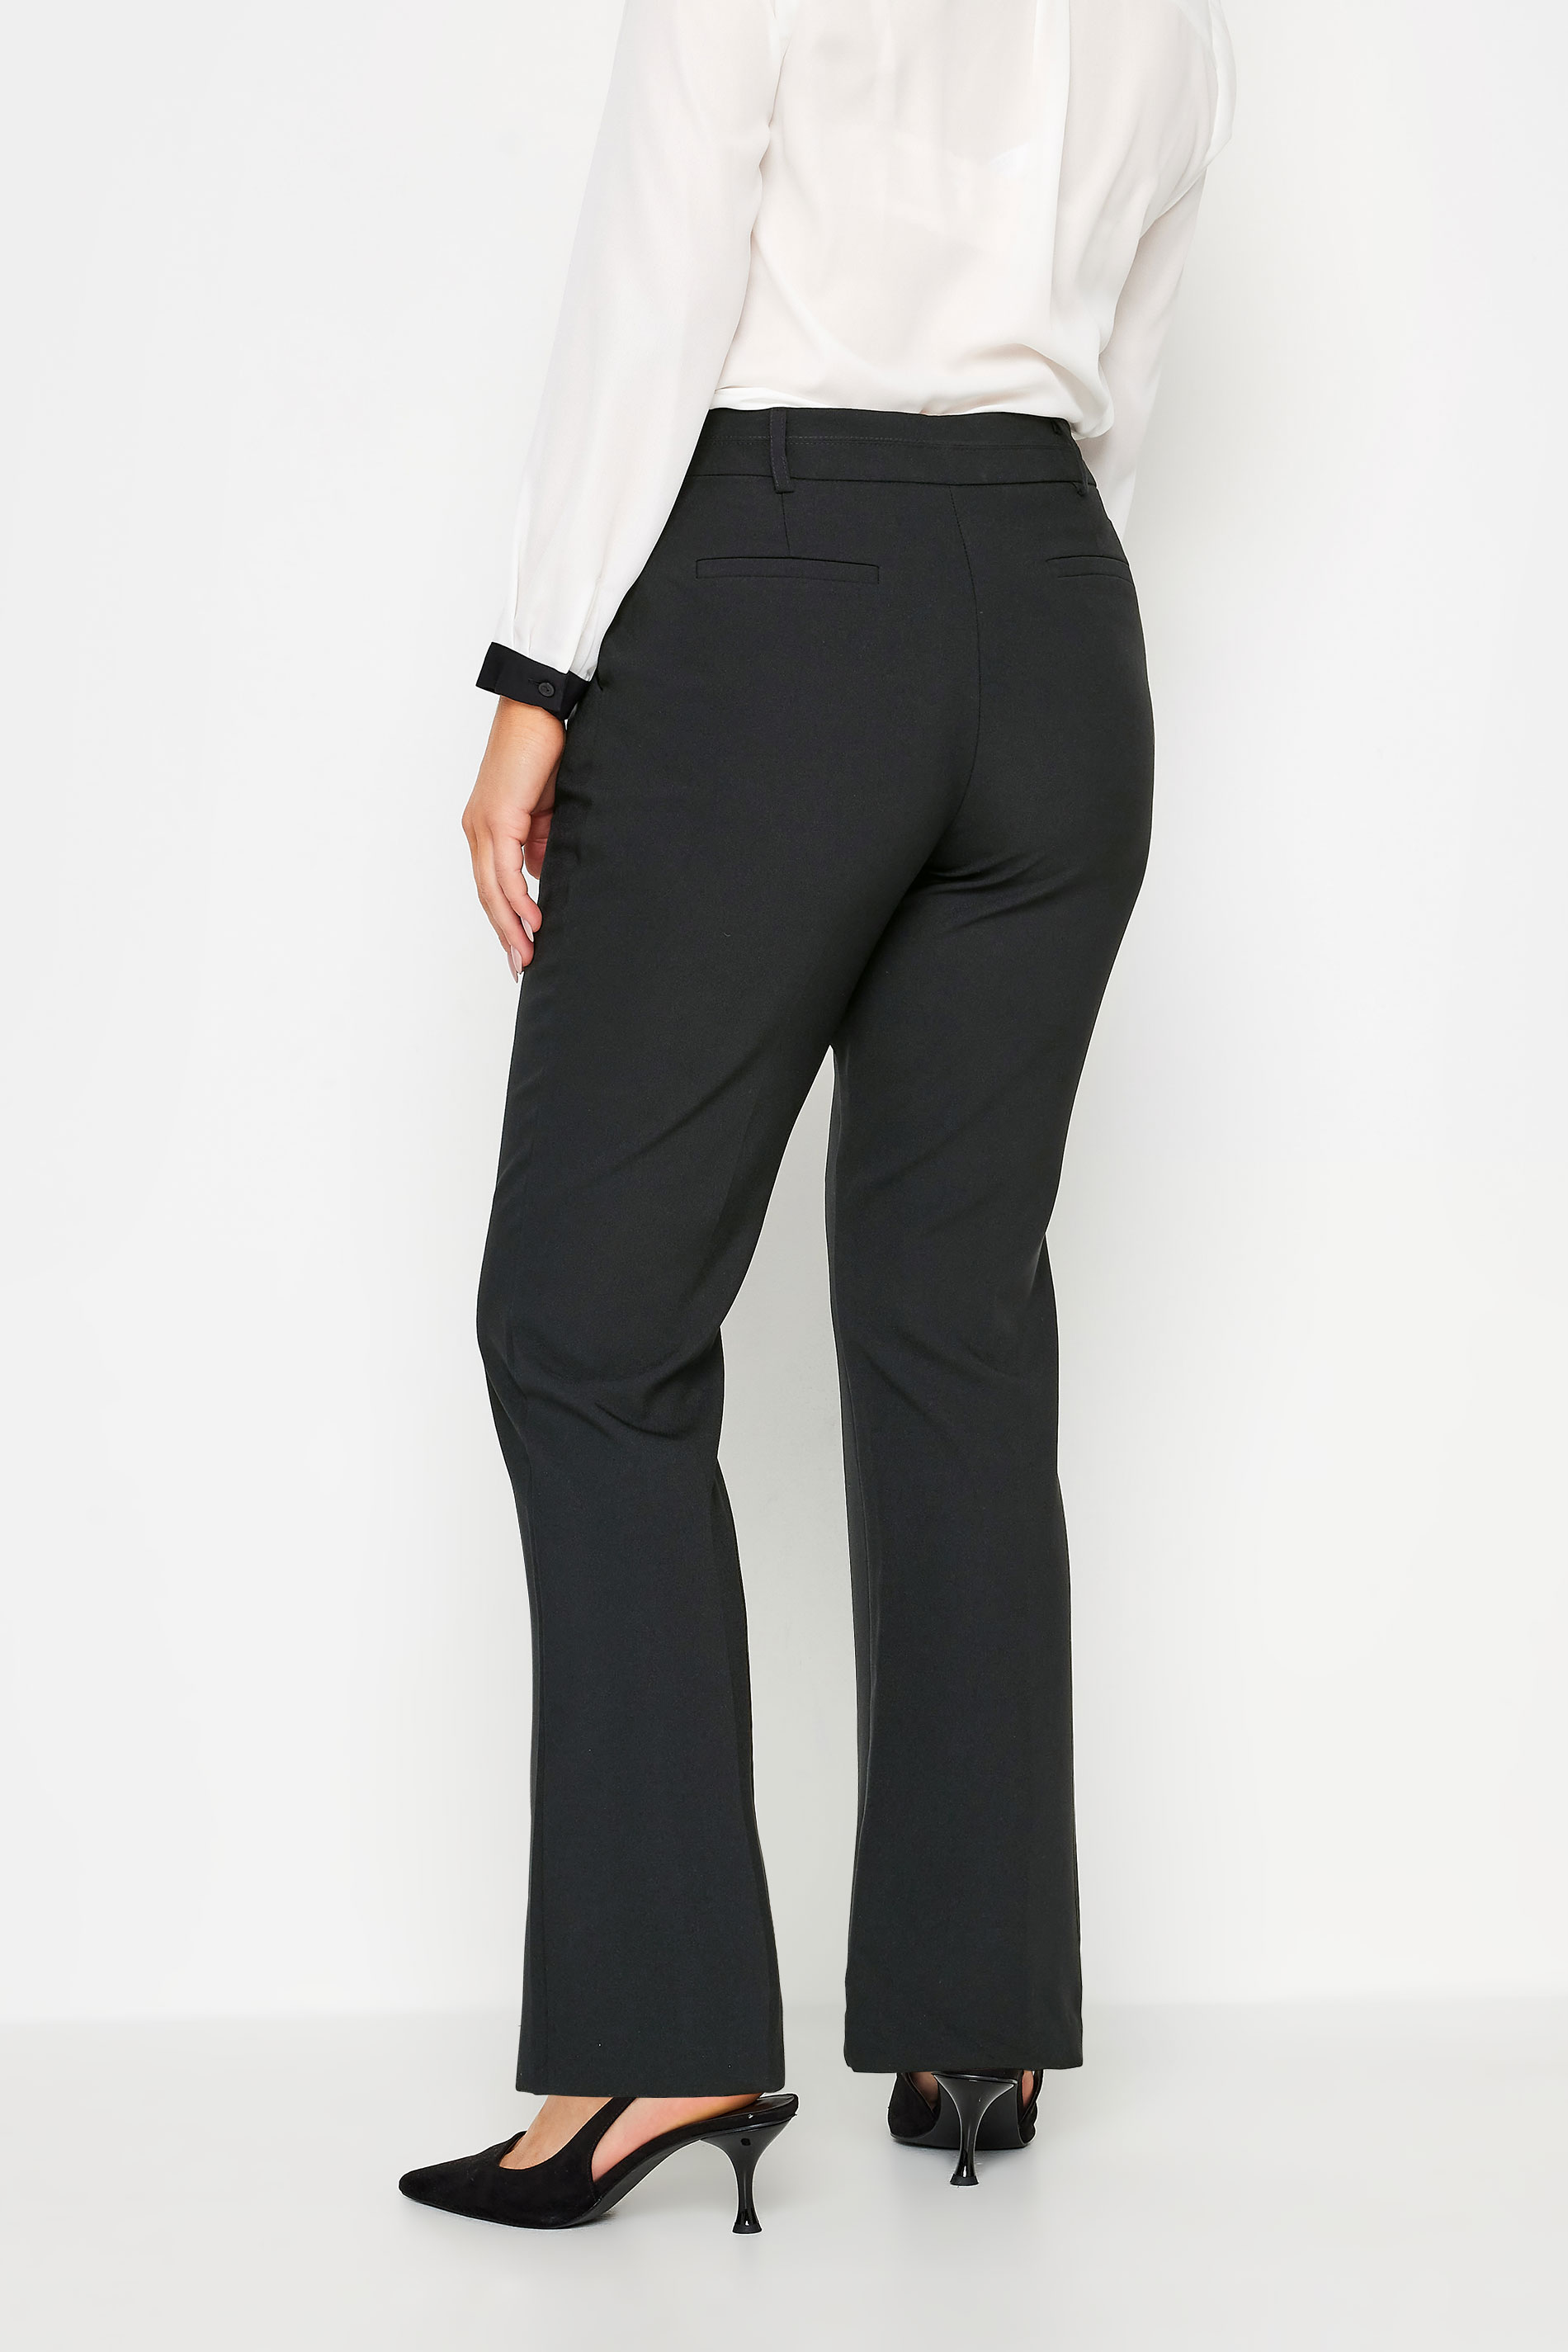 Wardrobe Black Bootcut Trousers  Women's Black Bootcut Pants